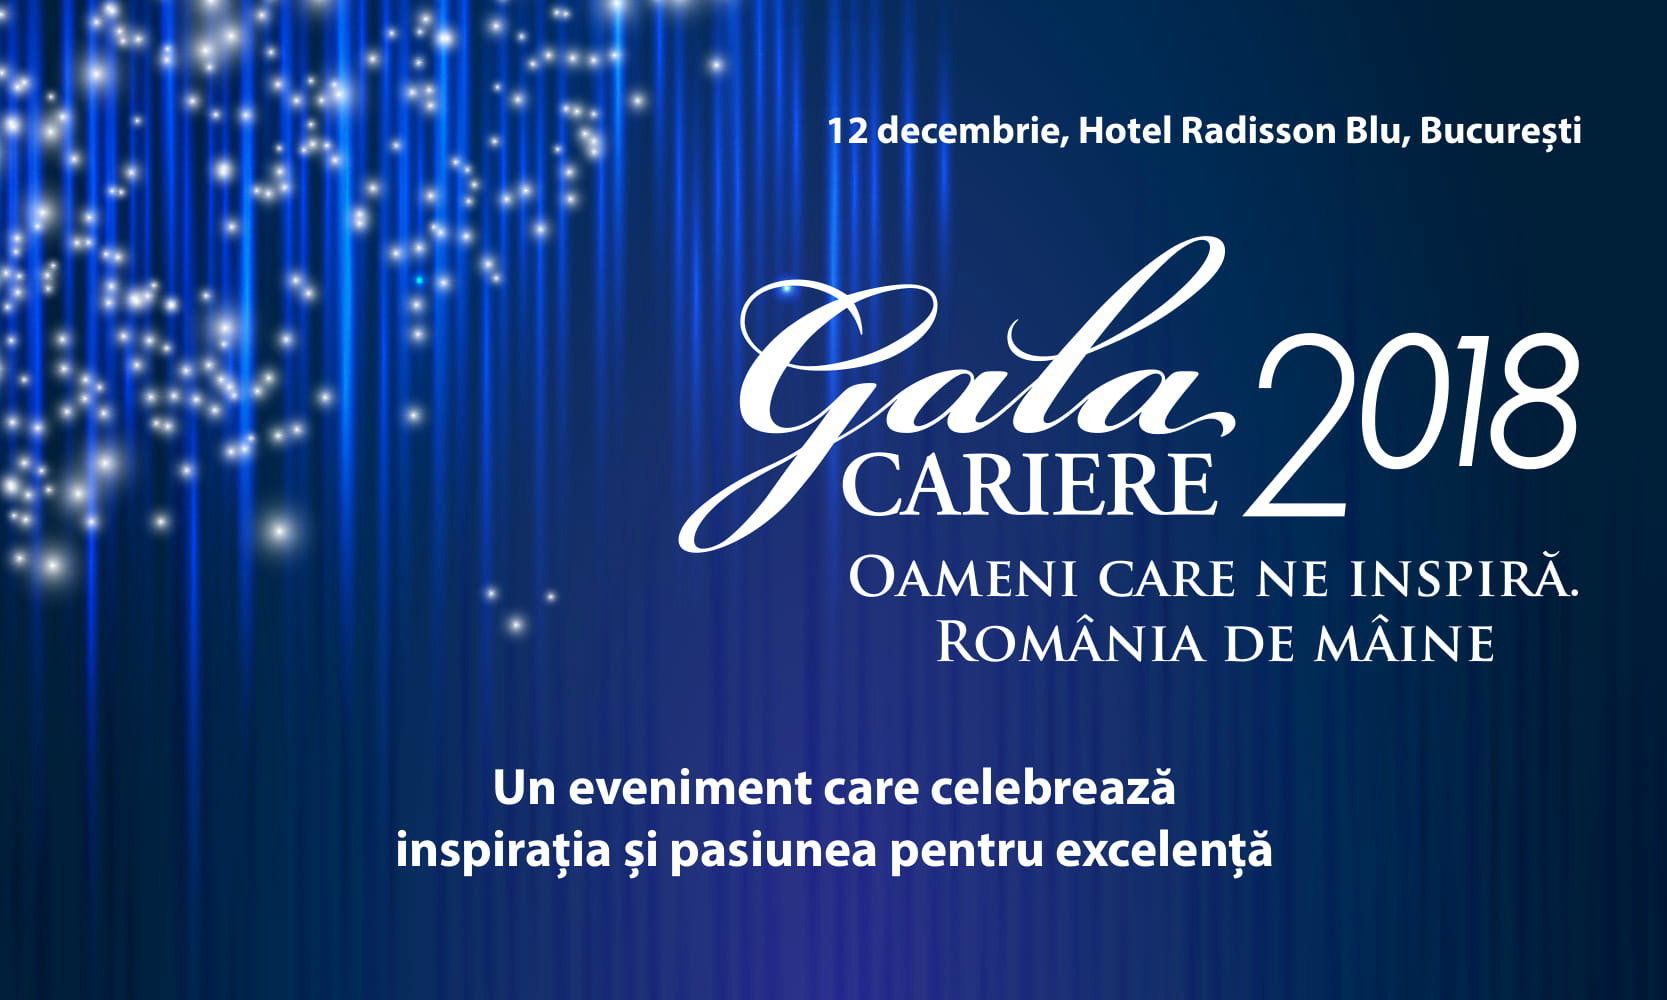 Tu alegi românii care ne inspiră, iar noi îi premiem la Gala Premiilor Revistei CARIERE 2018!